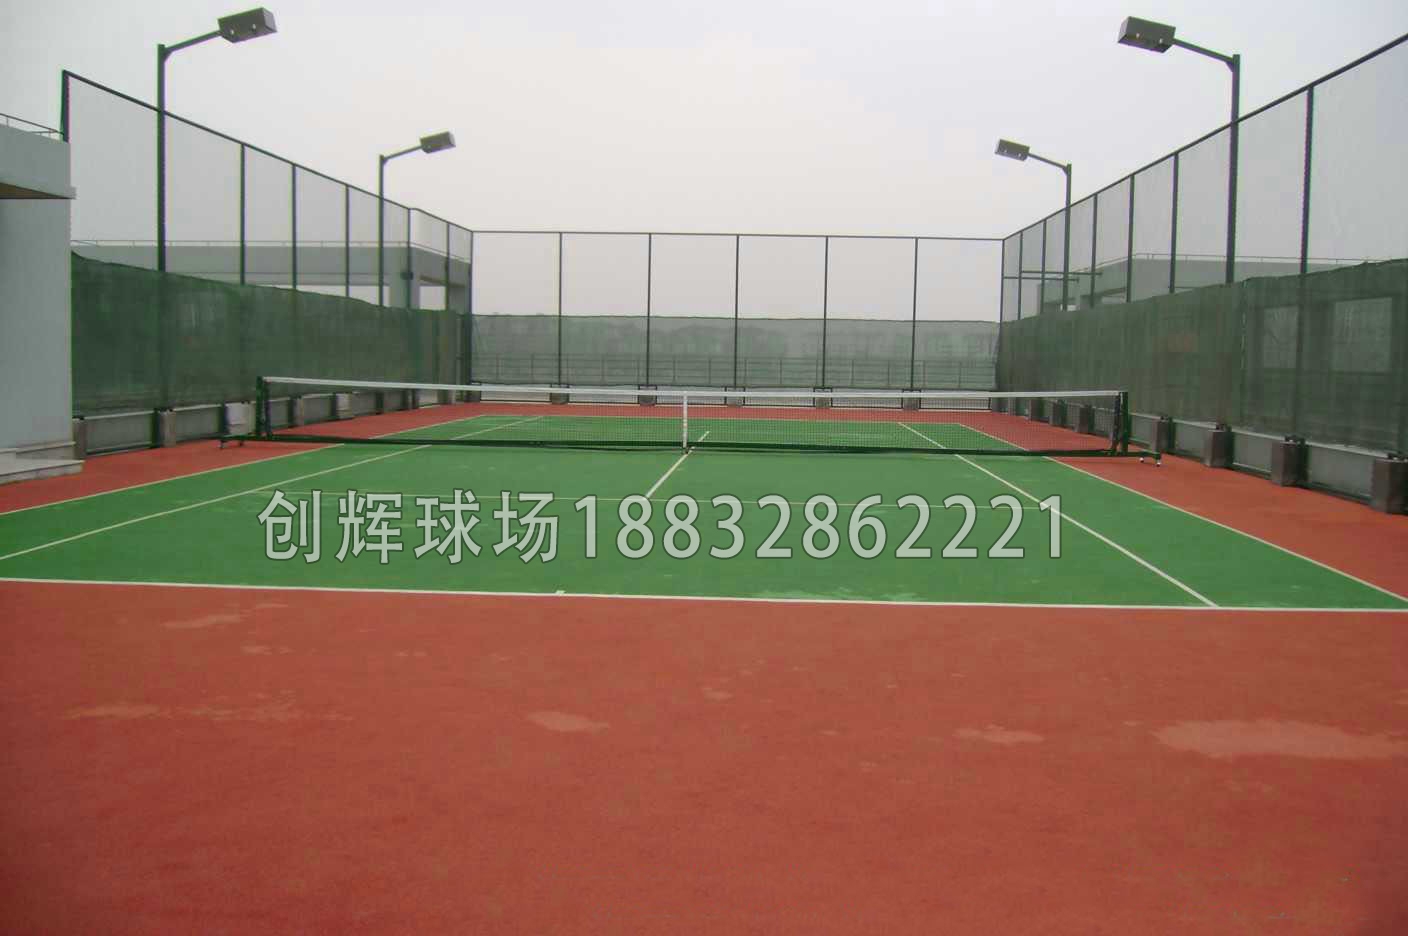 網球場(chǎng)規格